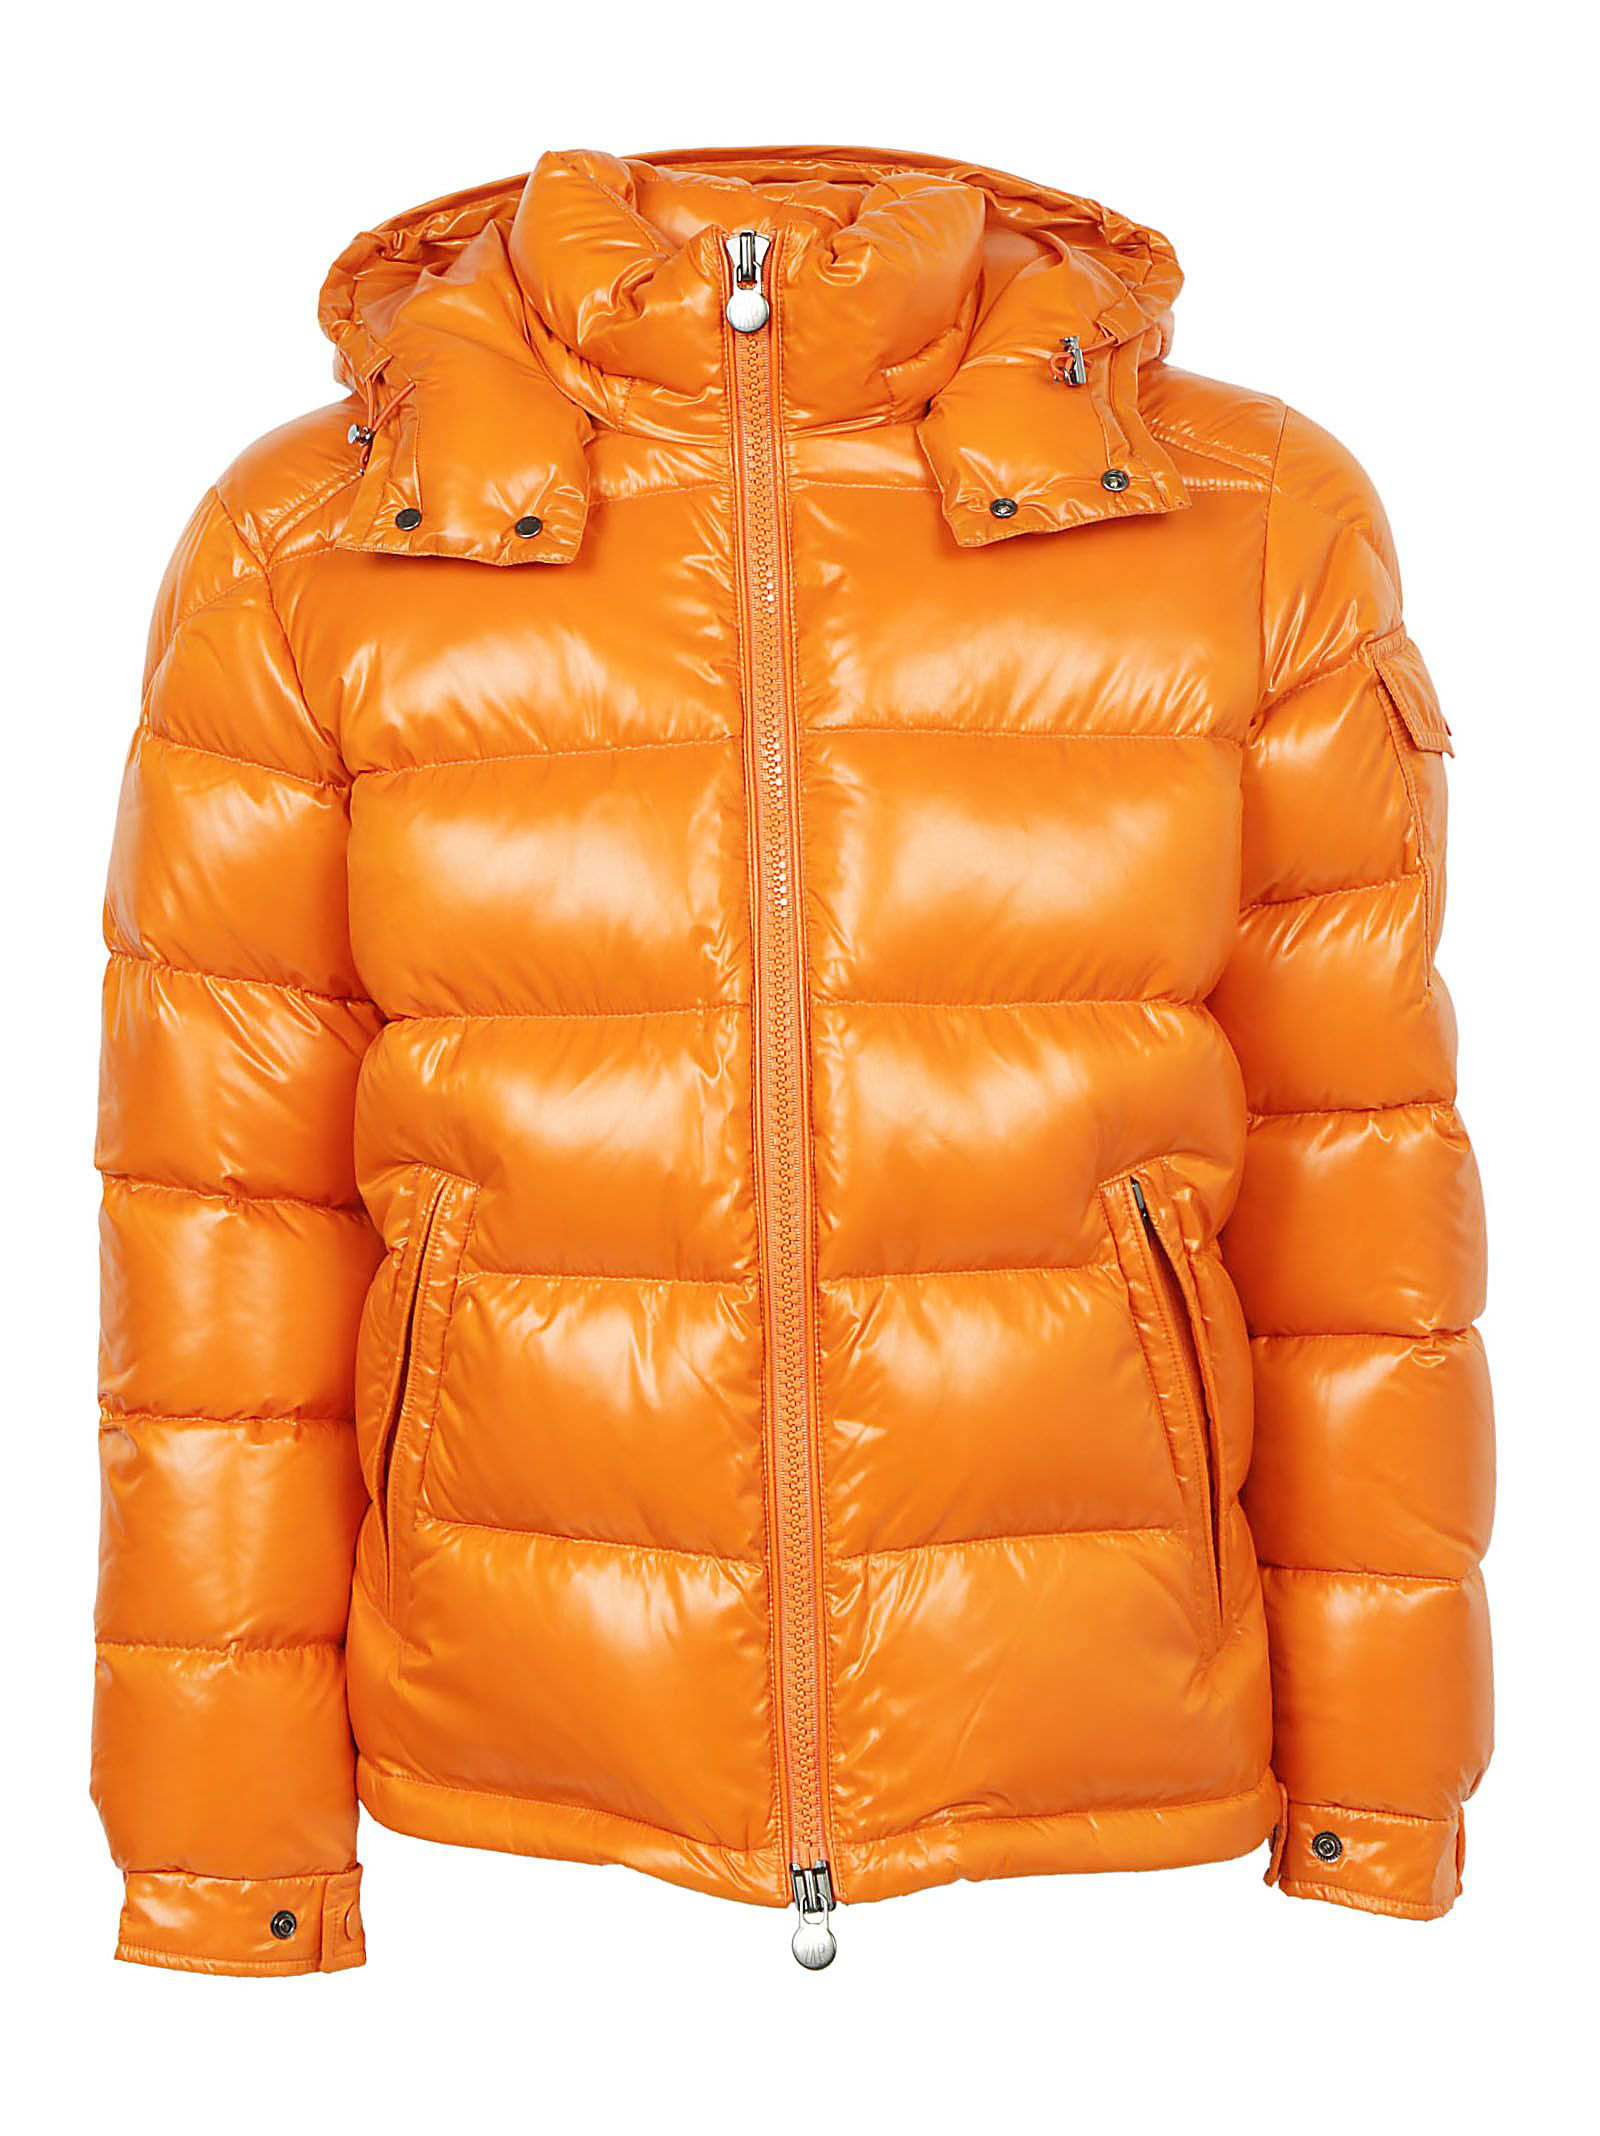 moncler jacket orange, OFF 74%,Cheap price!